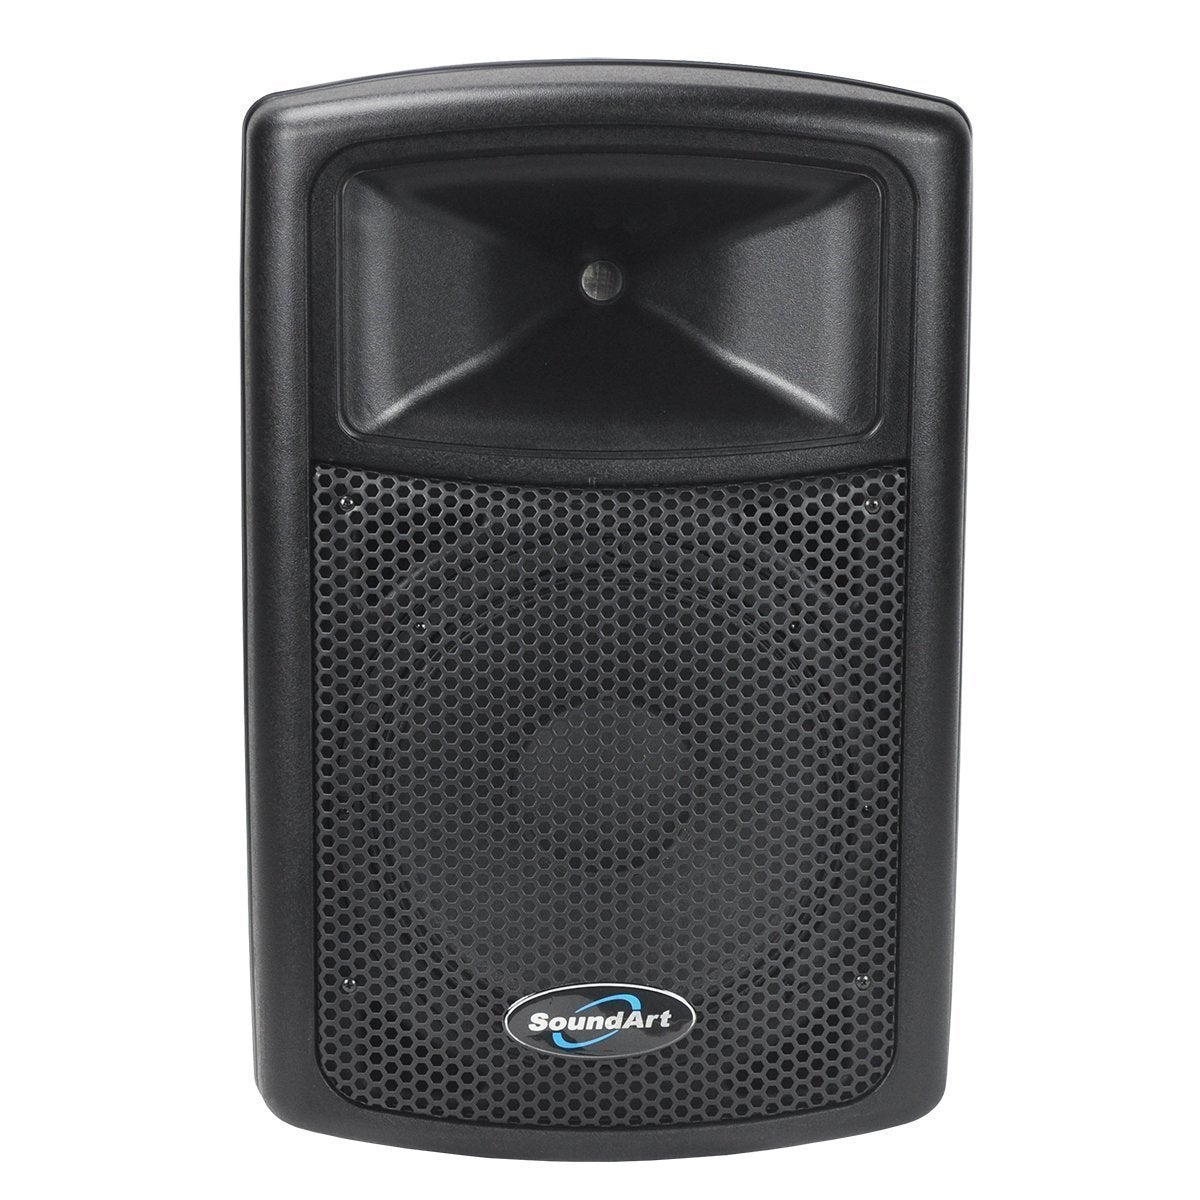 Soundart 300 Watt 4 Ohm ABS Speaker Cabinet